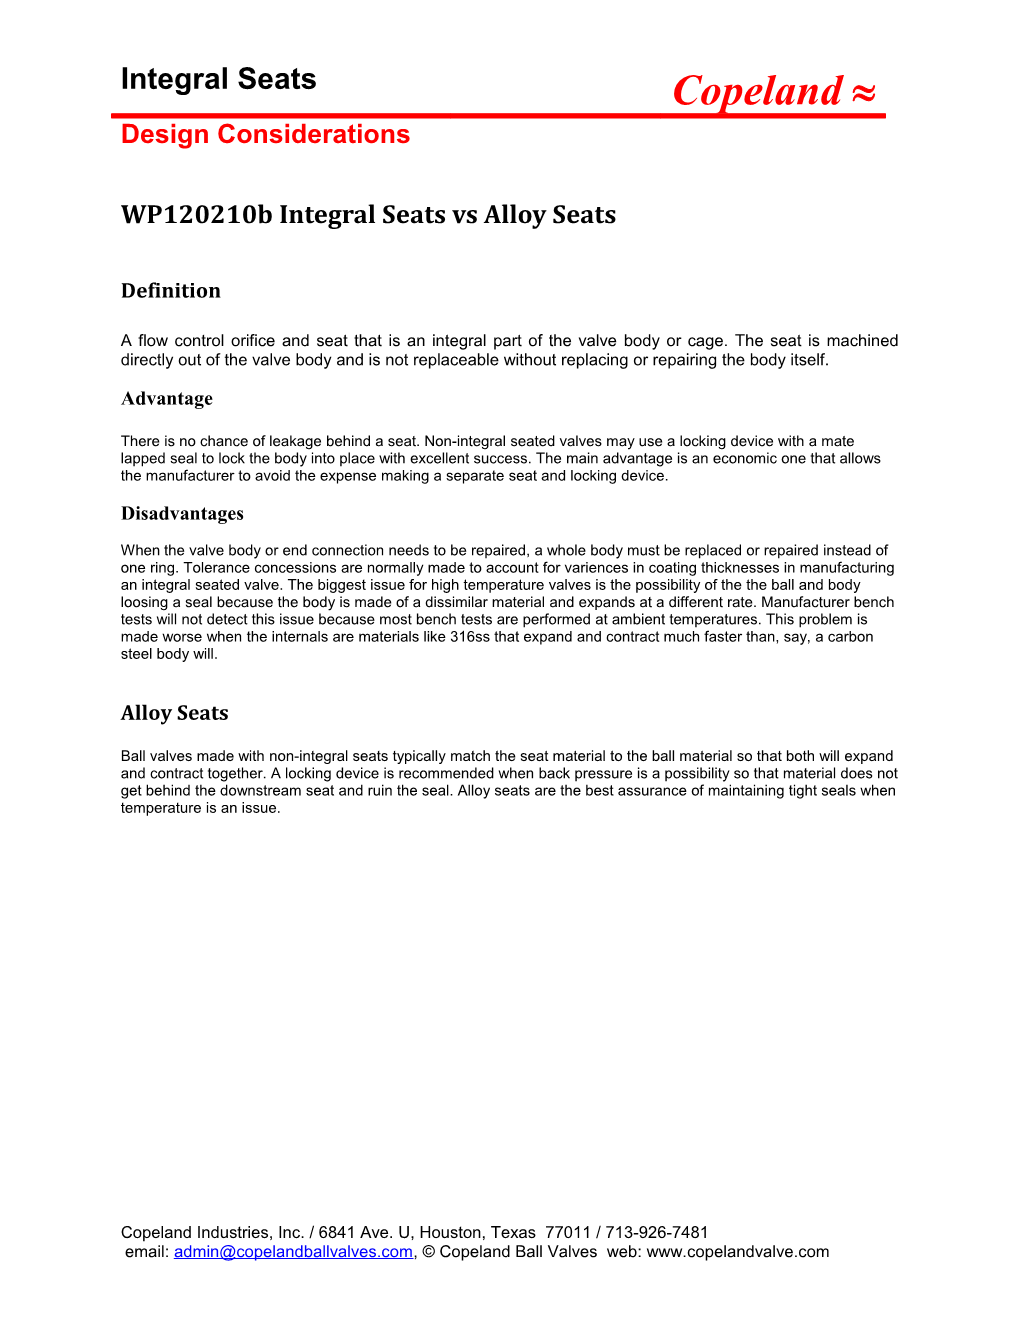 Wp120210b Integral Seats Vs Alloy Seats